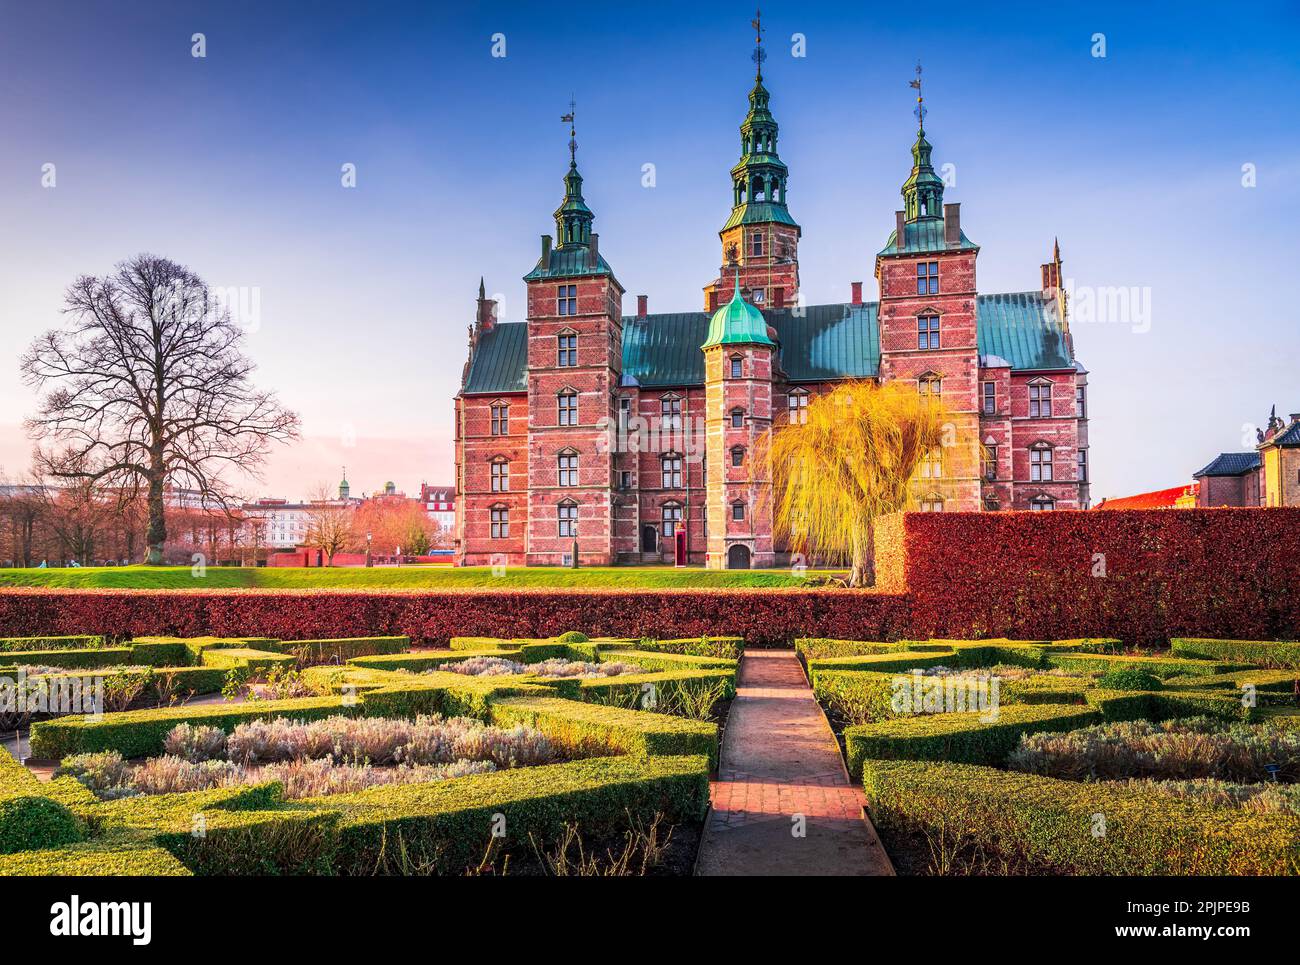 Kopenhagen, Dänemark. Rosenborg Slot ist ein Schloss aus dem 17. Jahrhundert, bekannt für seine wunderschönen Gärten. Stockfoto